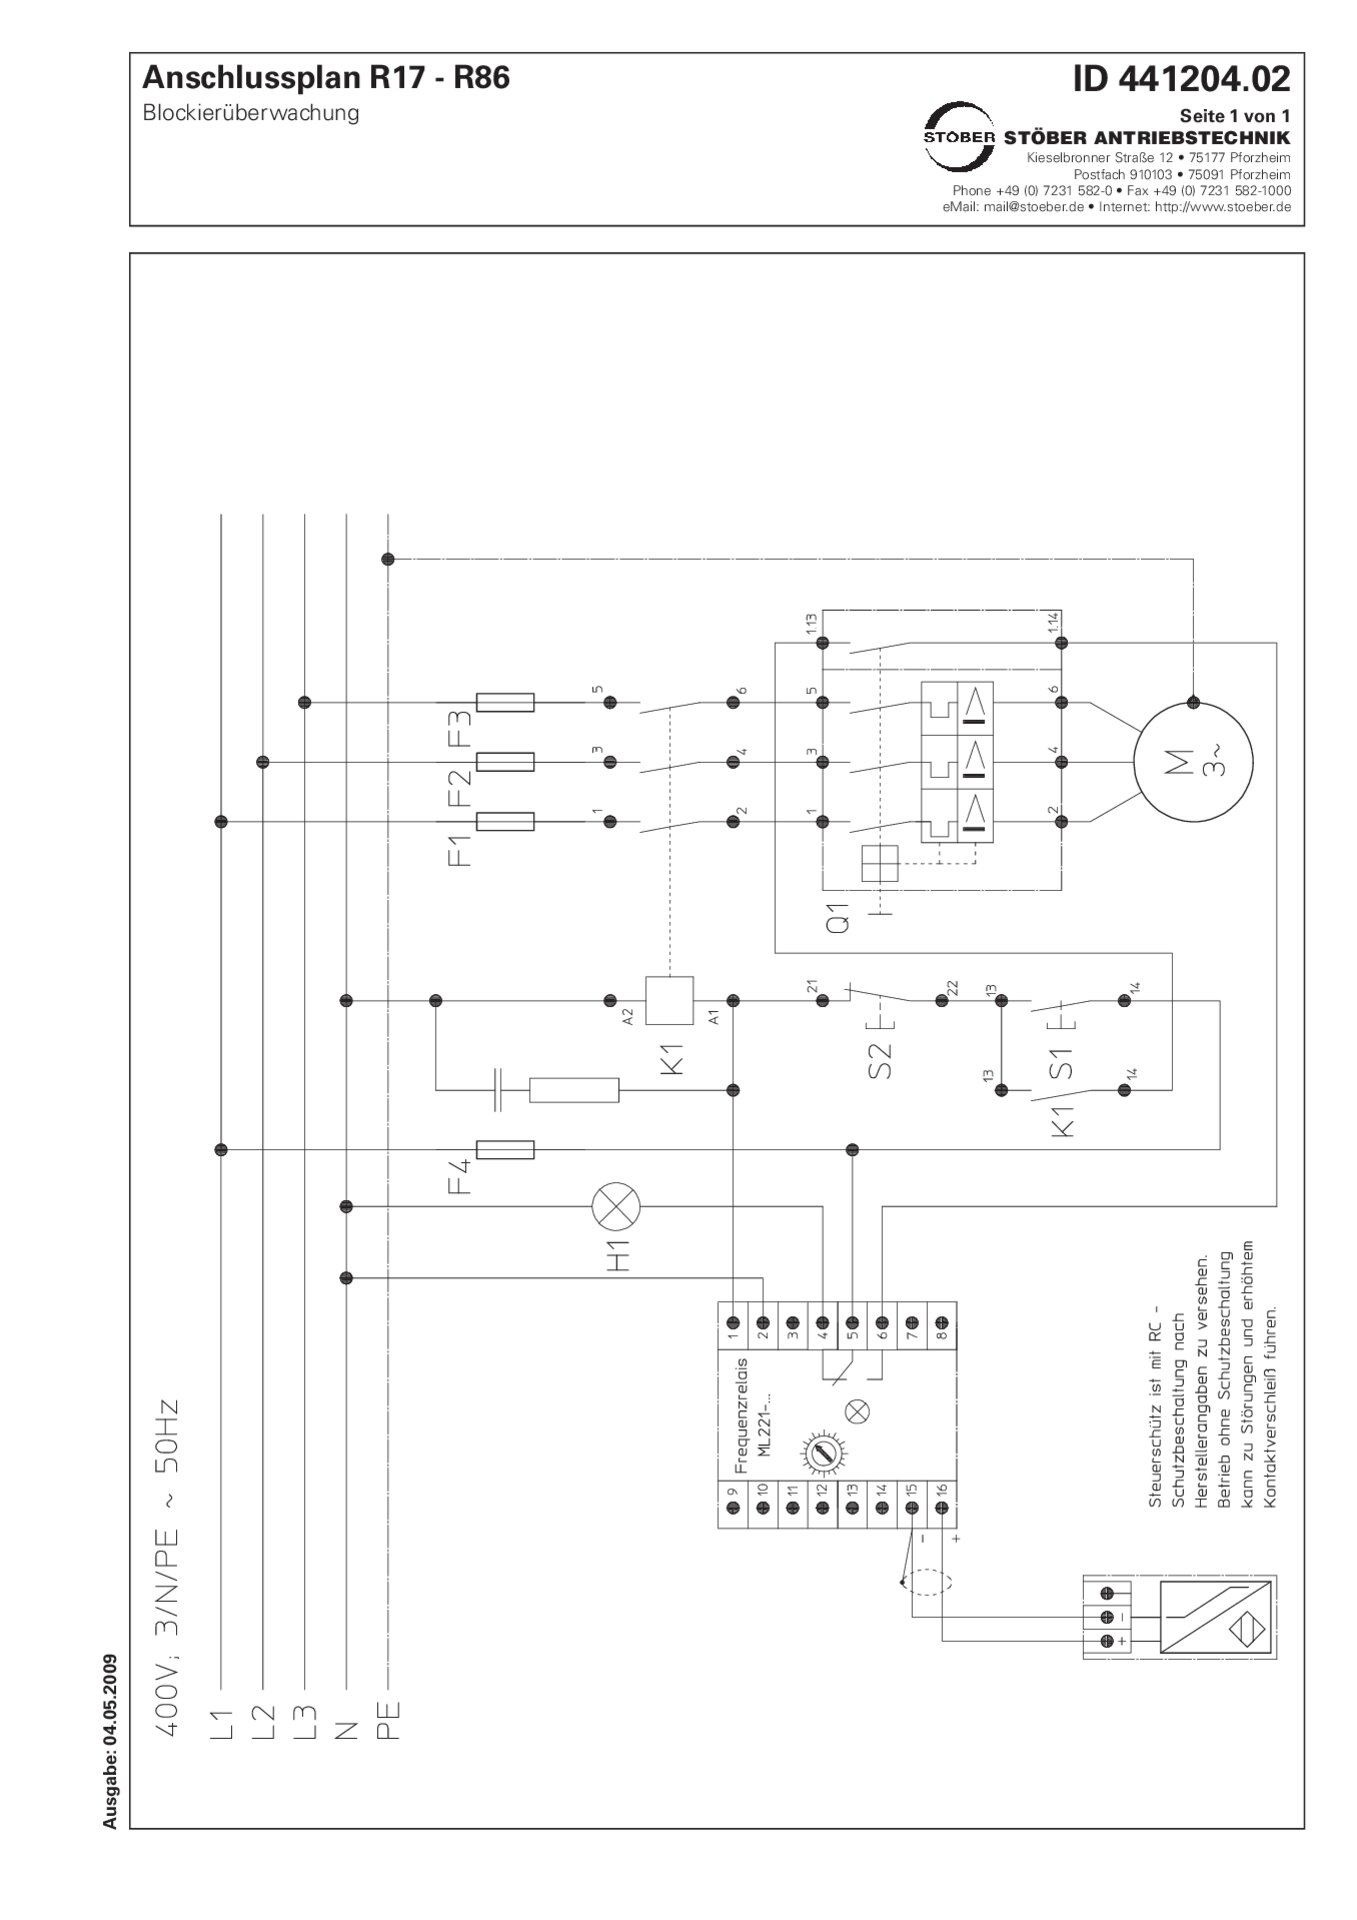 Anschlussplan R17-R86 Blockierüberwachung 230 V